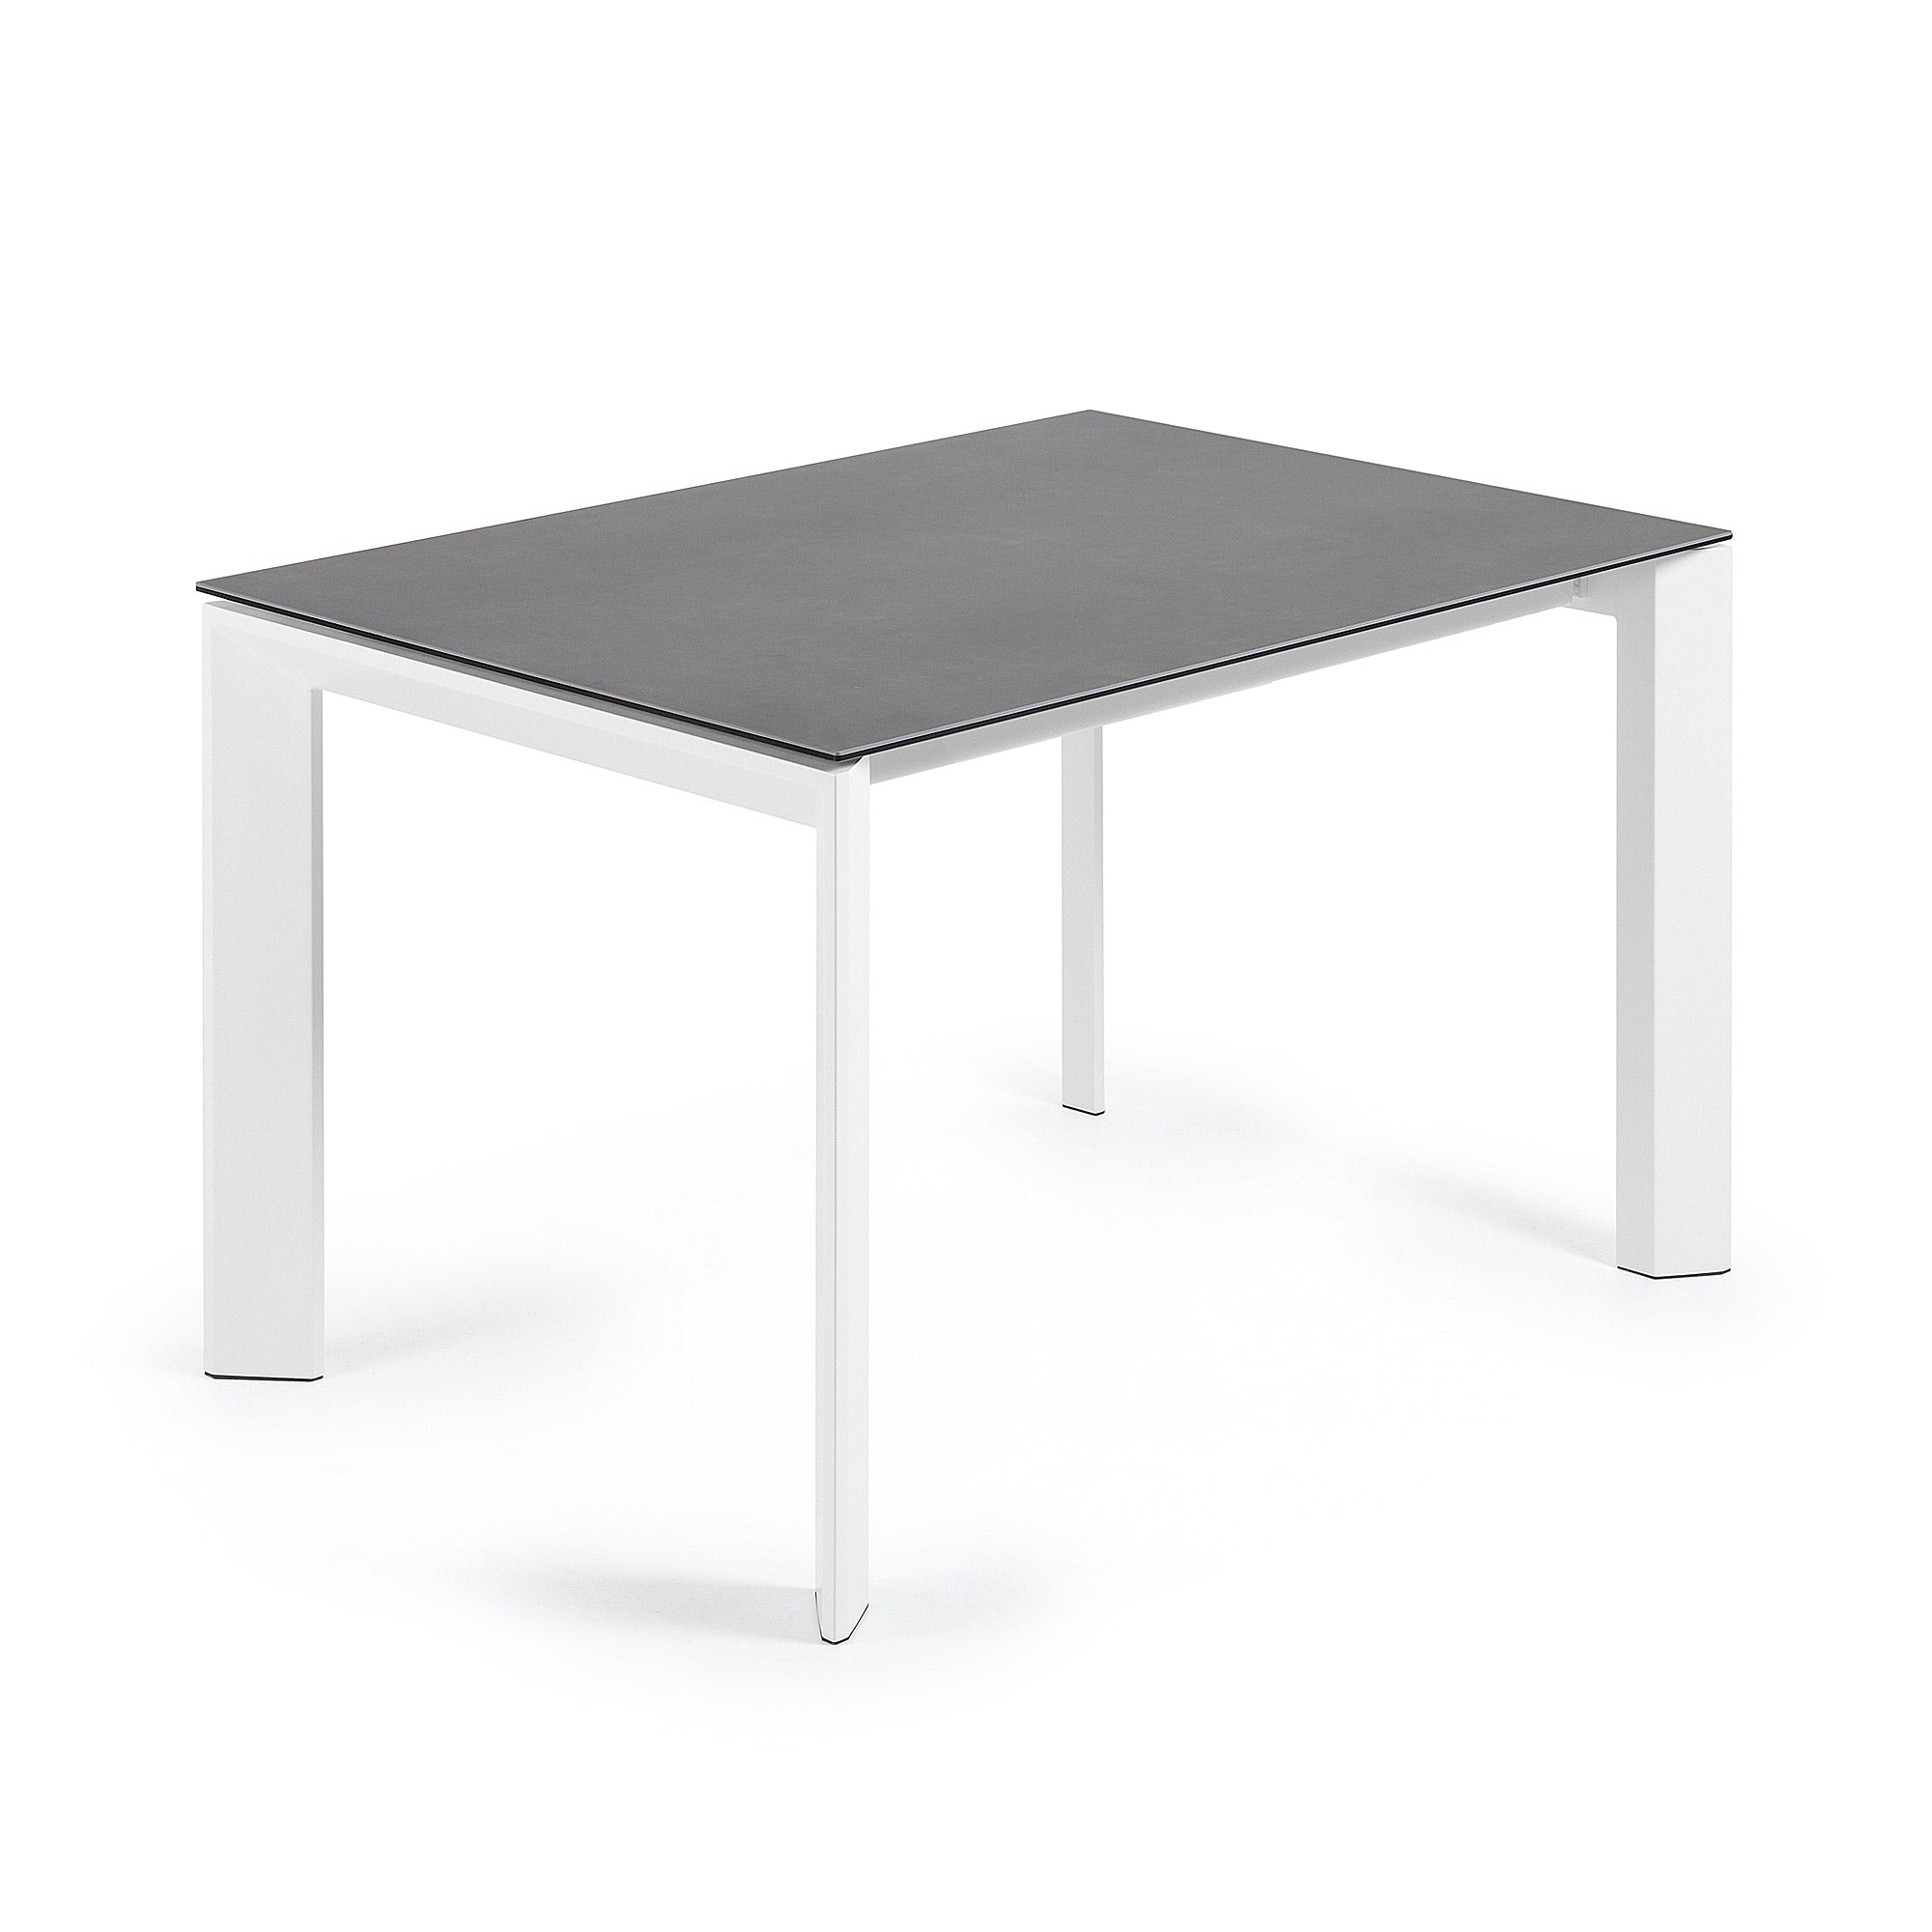 Axis porcelán kihúzható asztal Volcano Rock kivitelben, fehér acéllábakkal 120 (180) cm